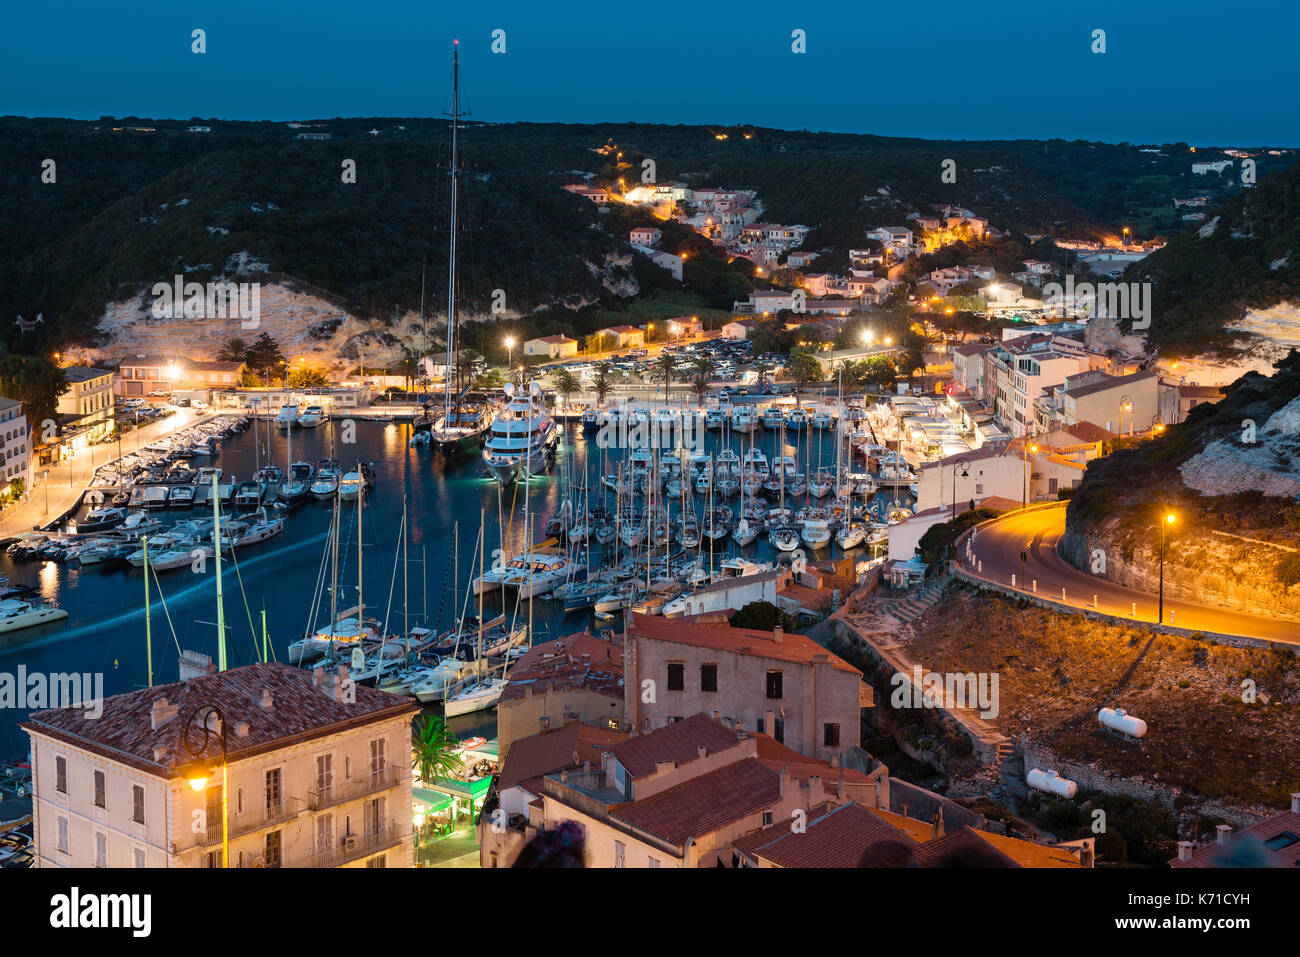 Marina at night, historic city of Bonifacio, Corsica island, France Stock Photo